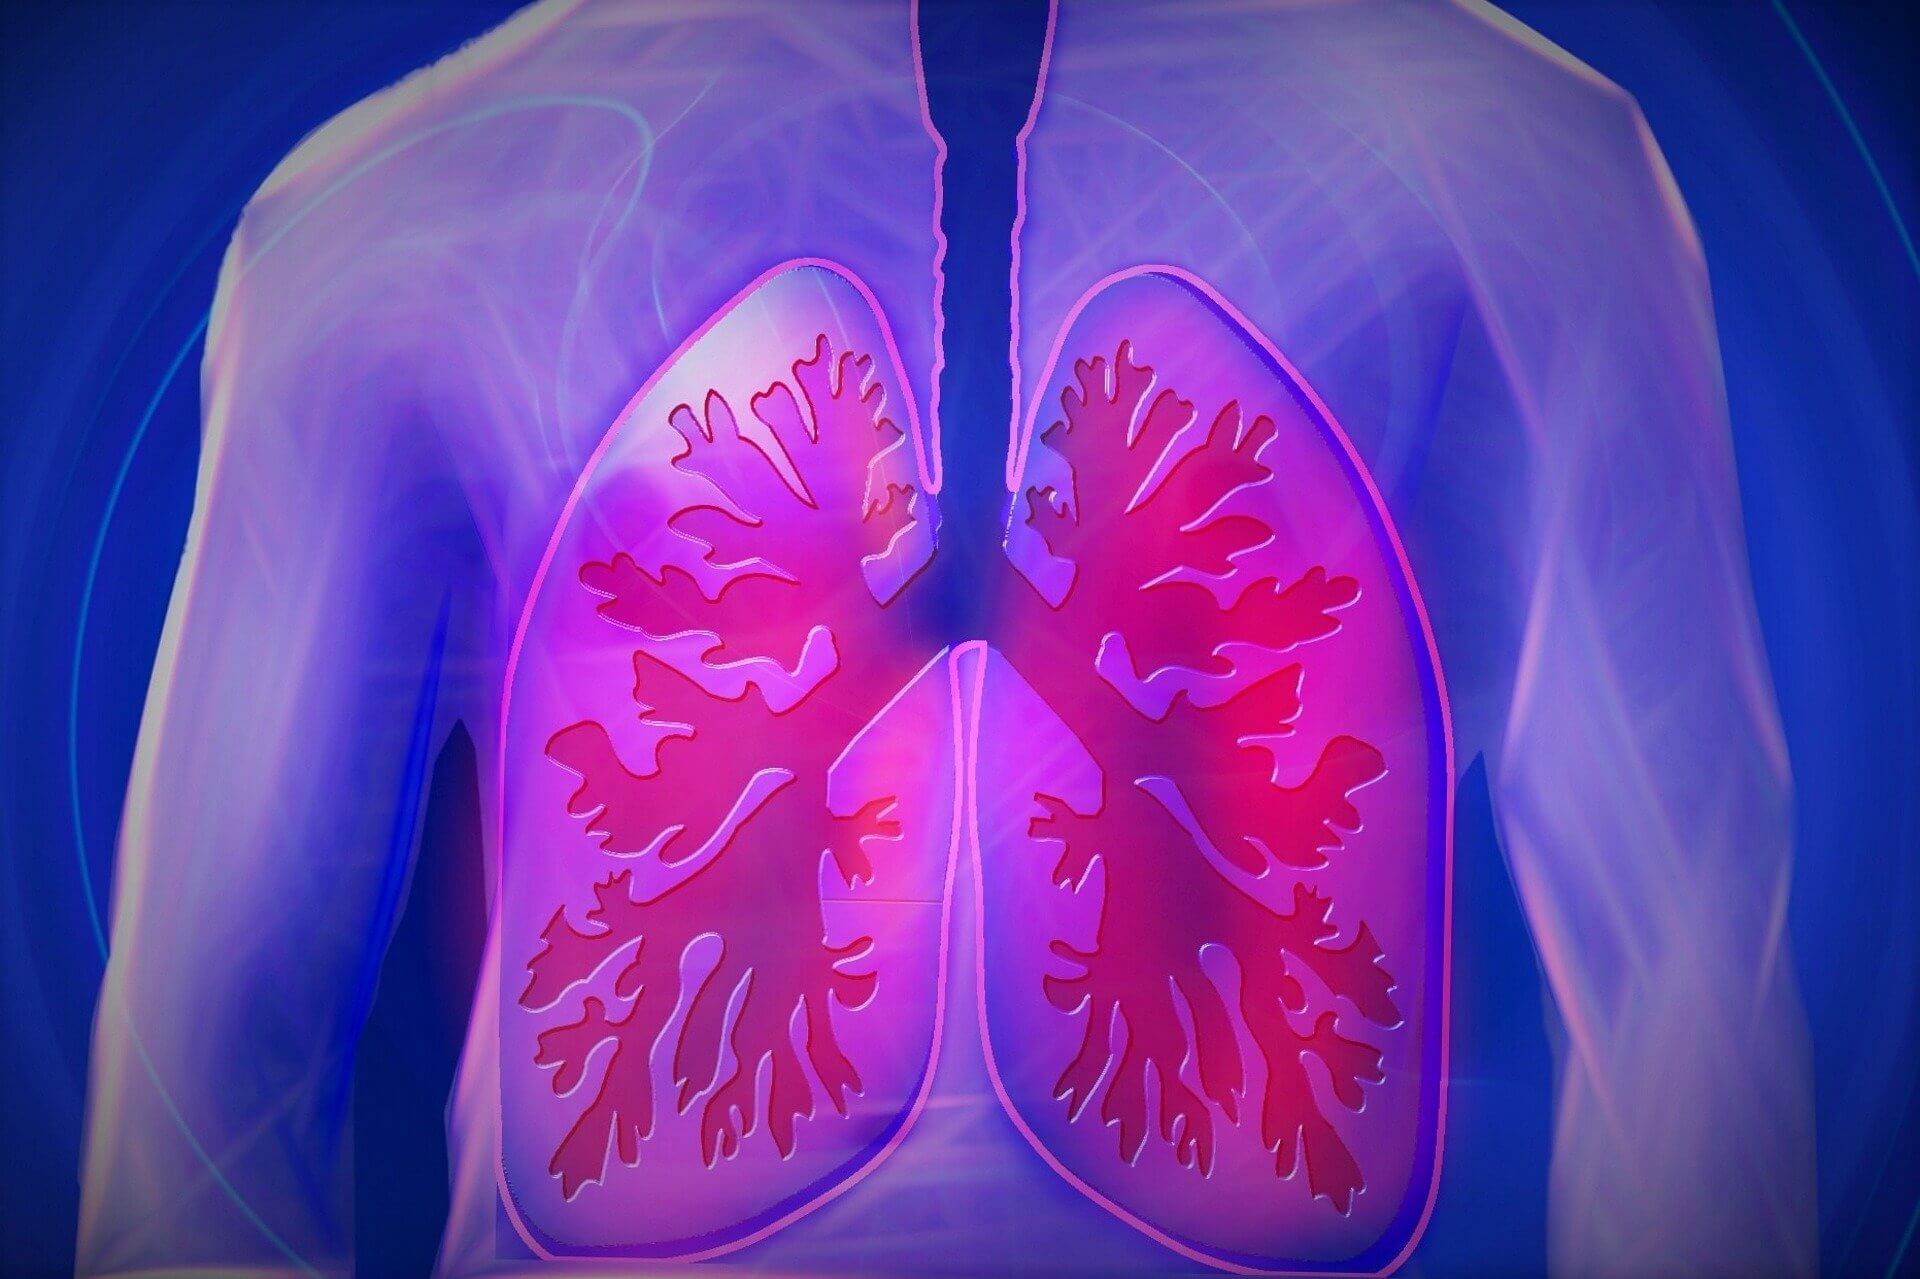 Une nouvelle analyse de sang révèle un cancer du poumon c de haute précision